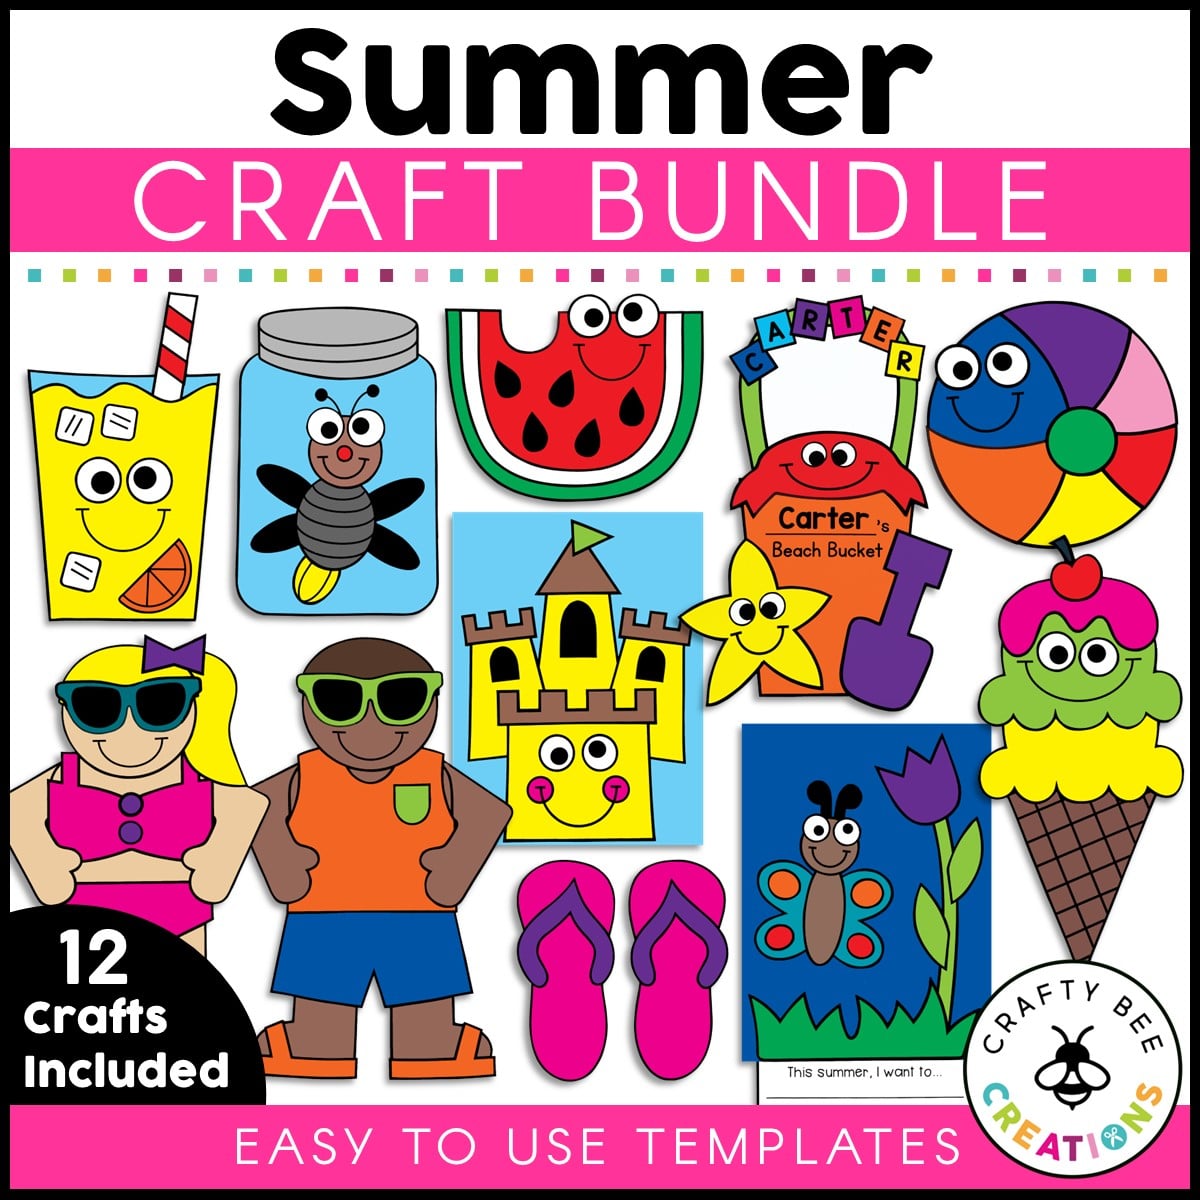 Summer Crafts for Kids Bulk Fun Summer Activities for Kids Ages 4-8 Summer  Camp Activities Bees for Crafts Kids Summer Activities Bee Magnets Craft